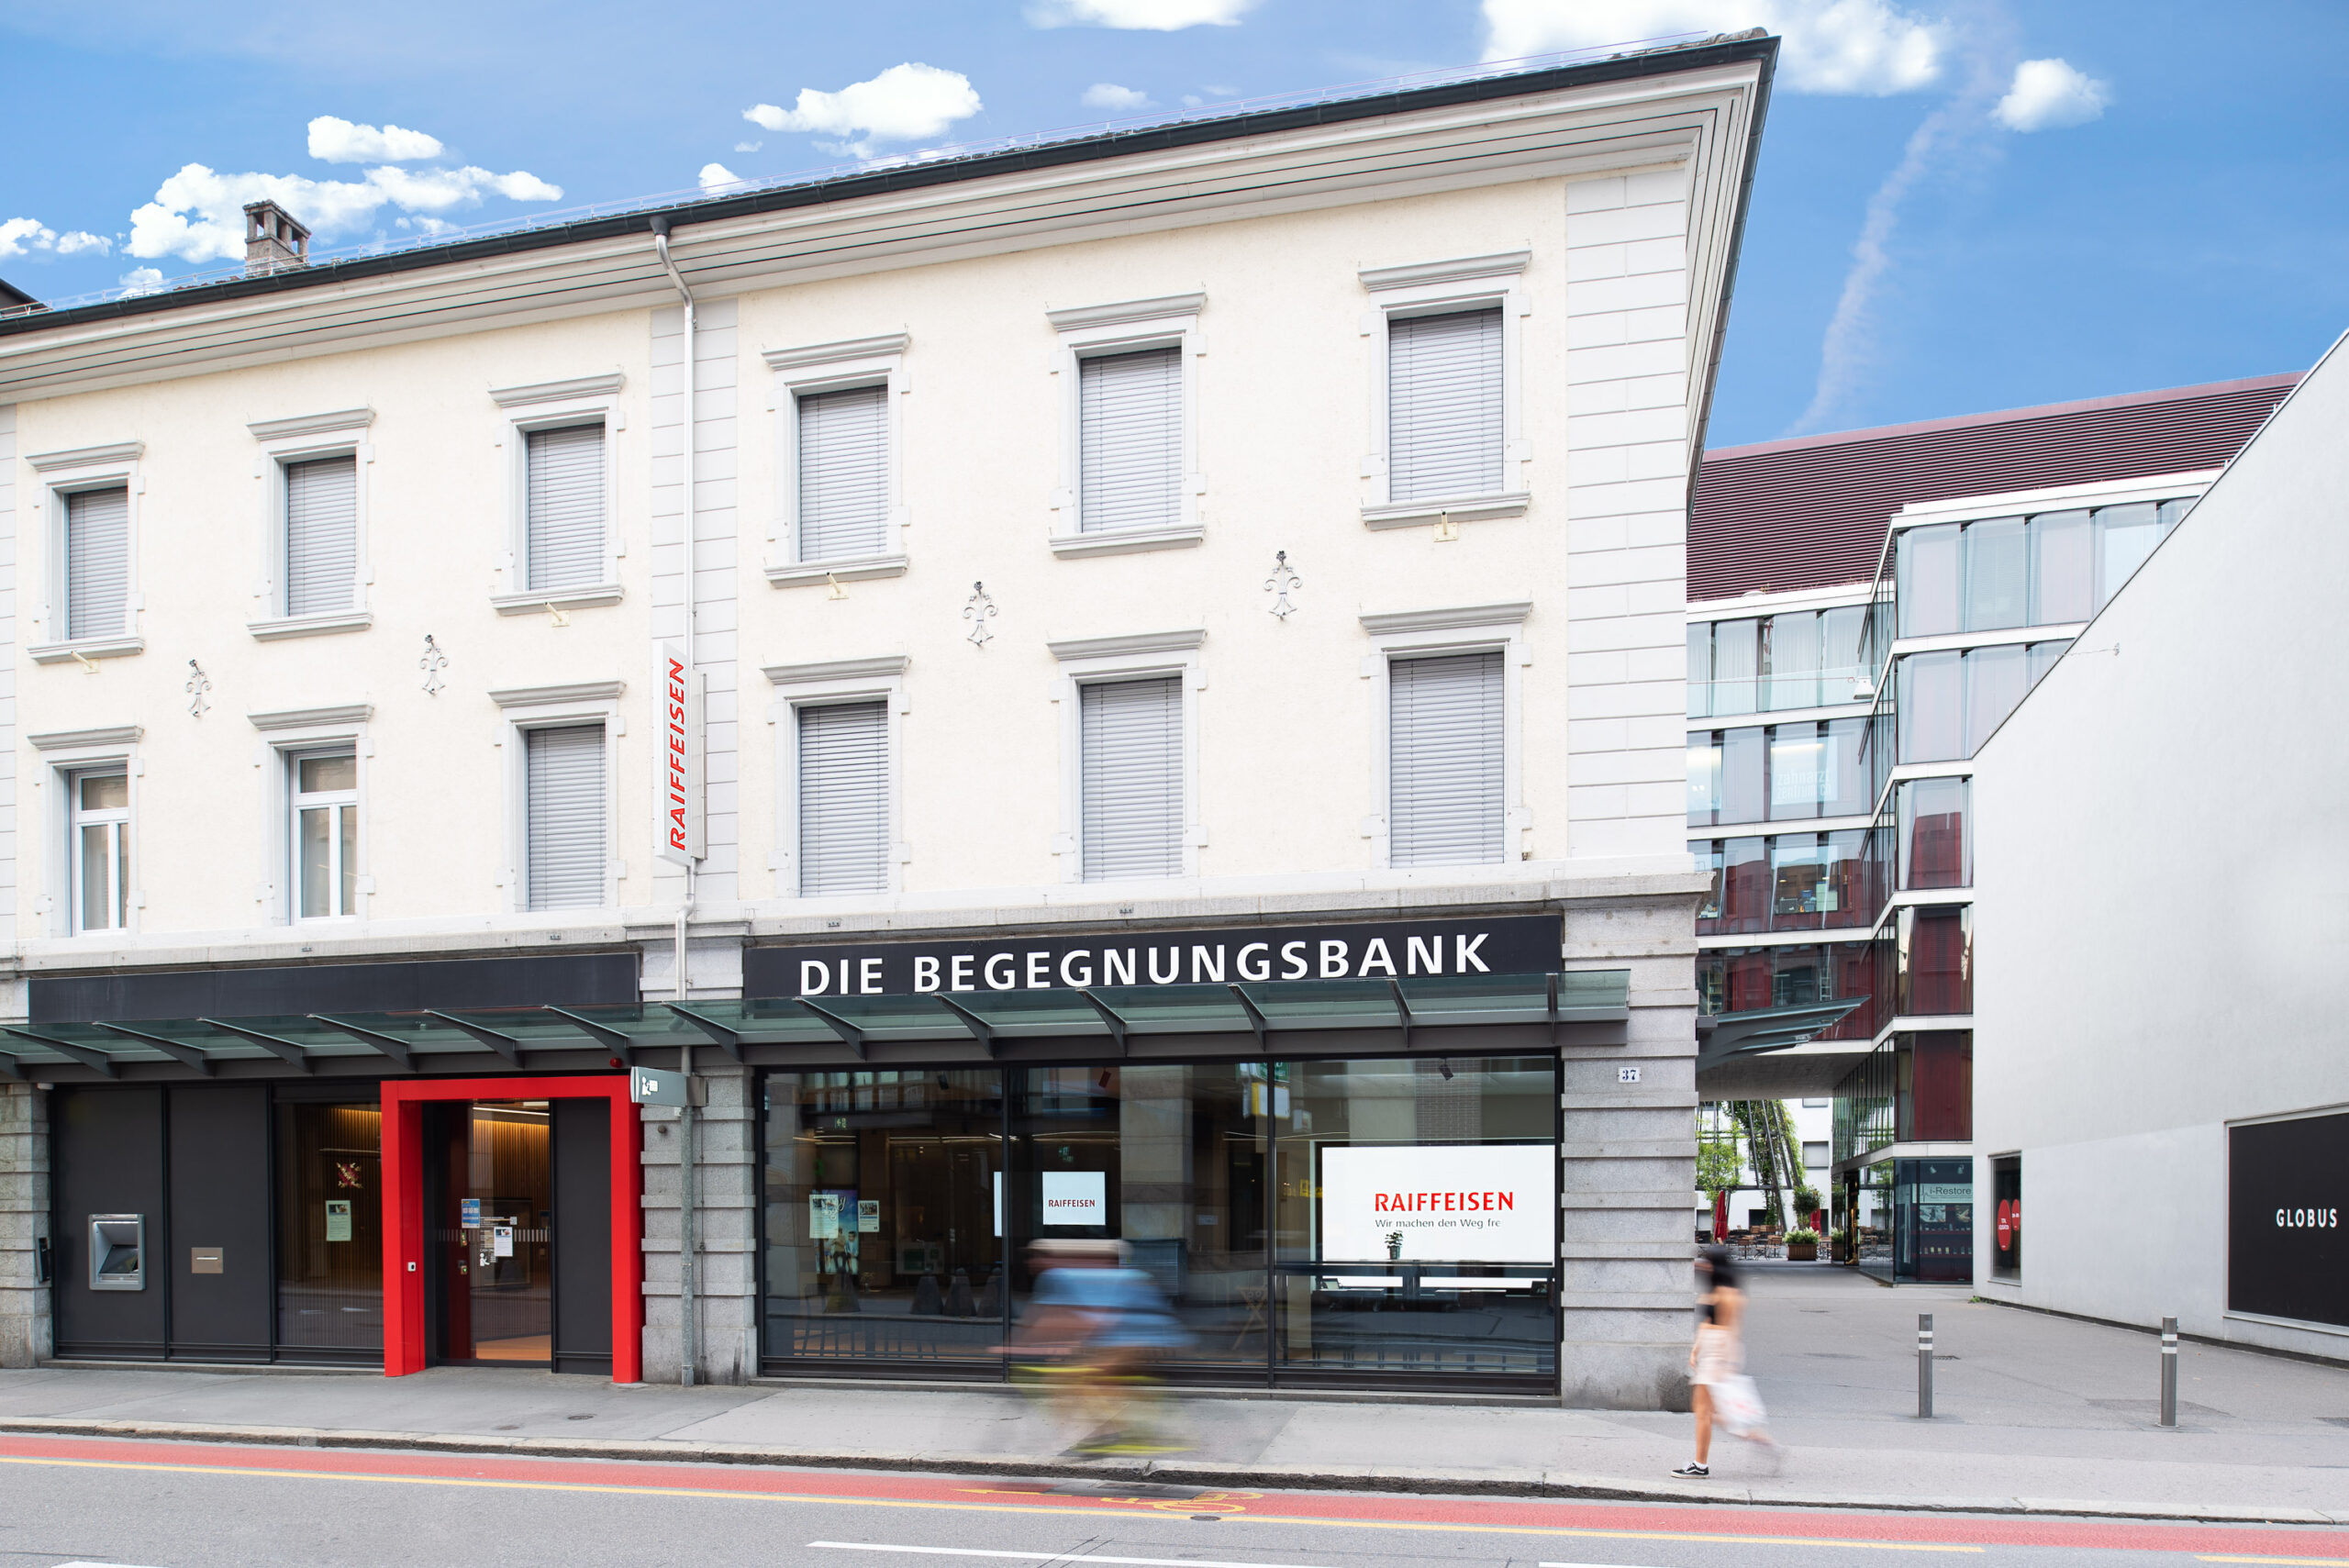 3-routscher-fotografie-corporate-business-Raiffeisenbank-Aarau-Lenzburg-kölliken-oberentfelden-filialen_Routscher_Roger_Nebi